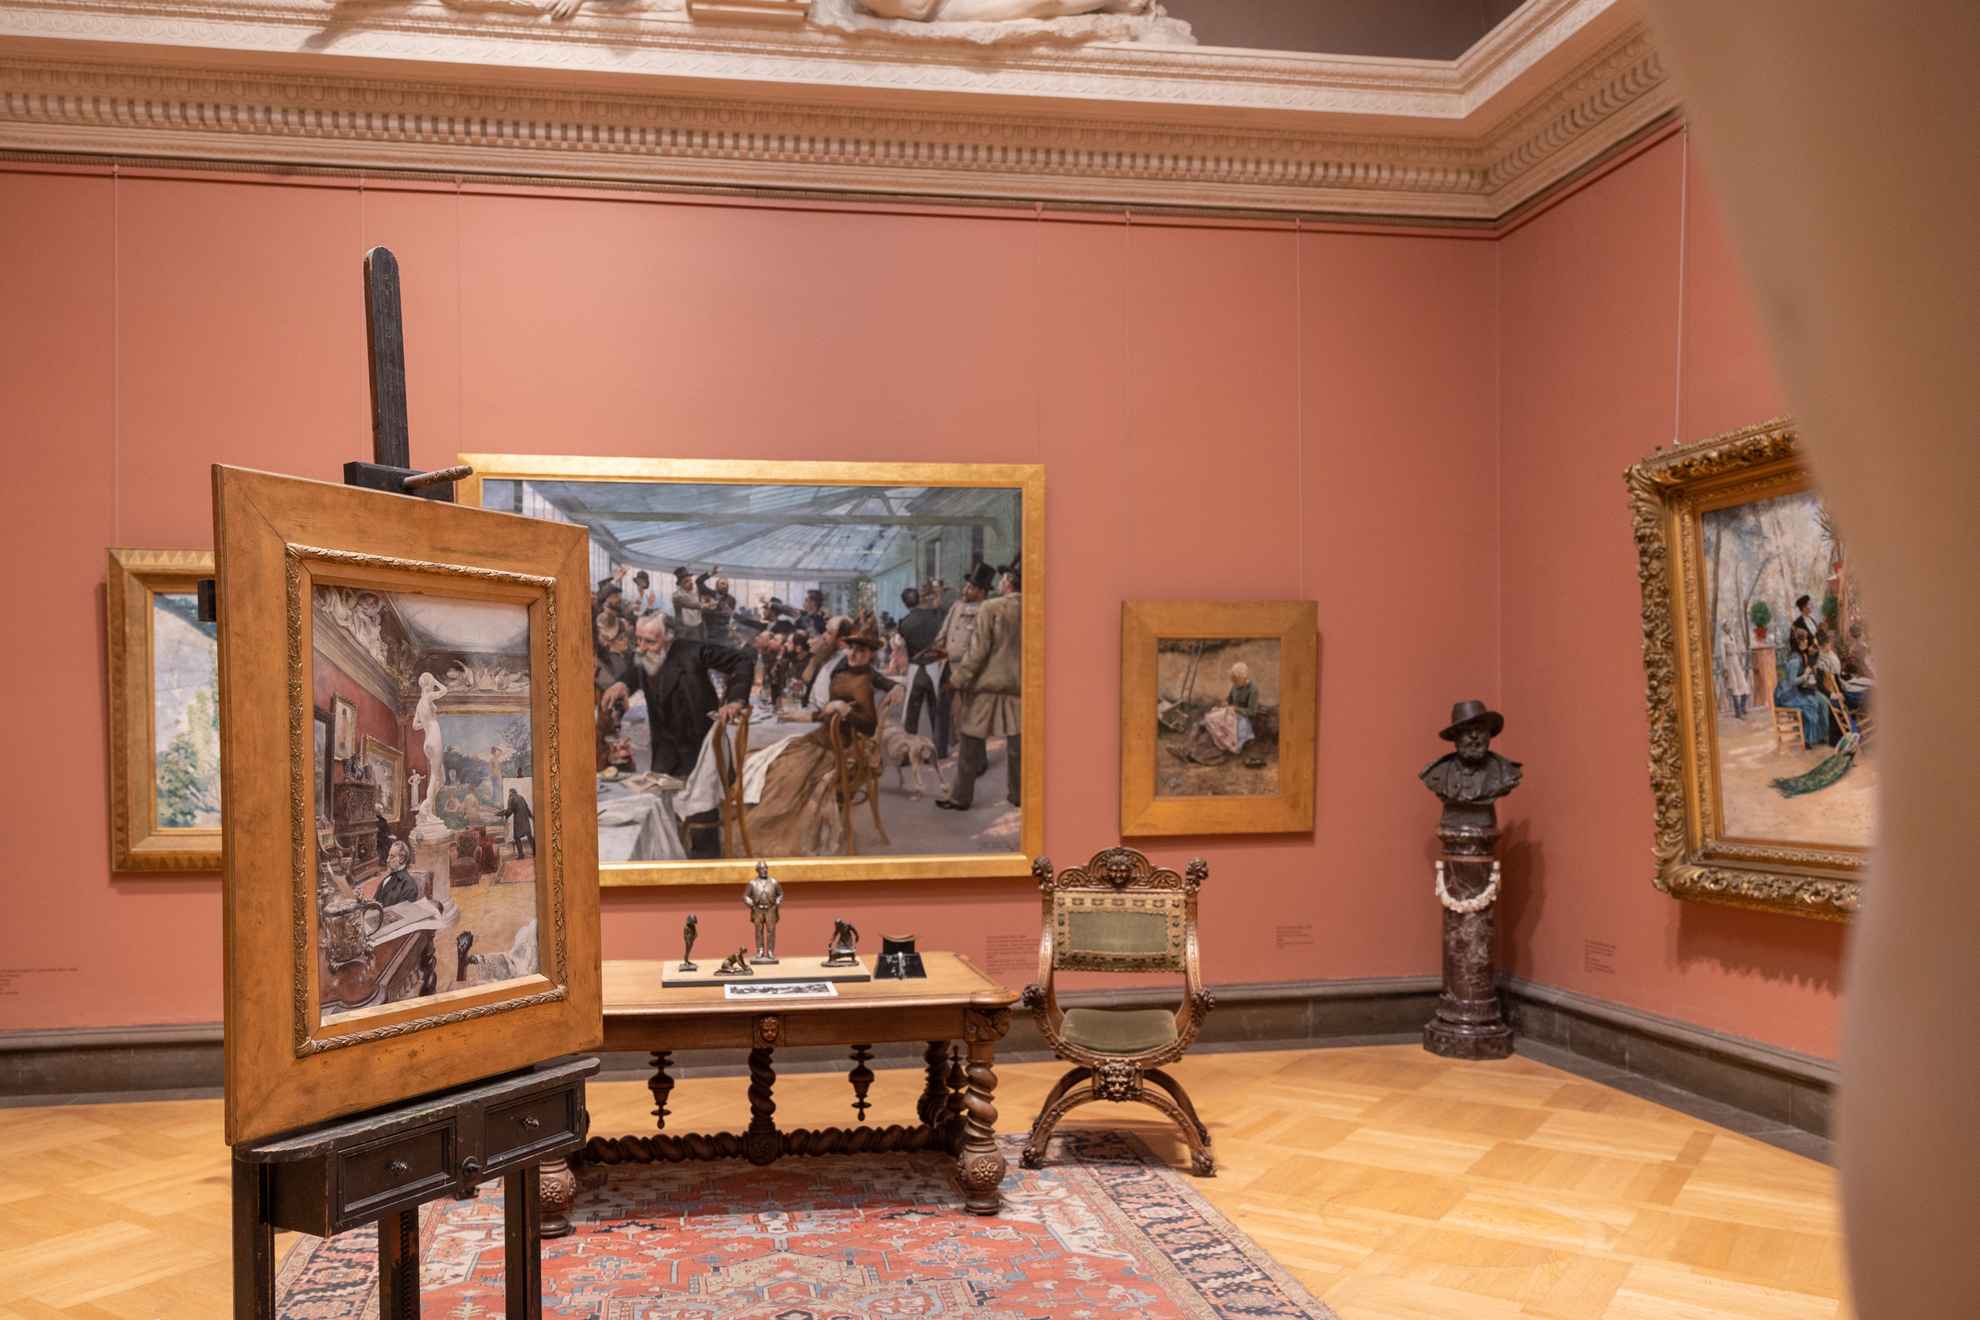 Des œuvres d'art sont exposées dans une pièce aux murs de couleur rose poudre et dont le sol en bois est recouvert d'un tapis ancien.